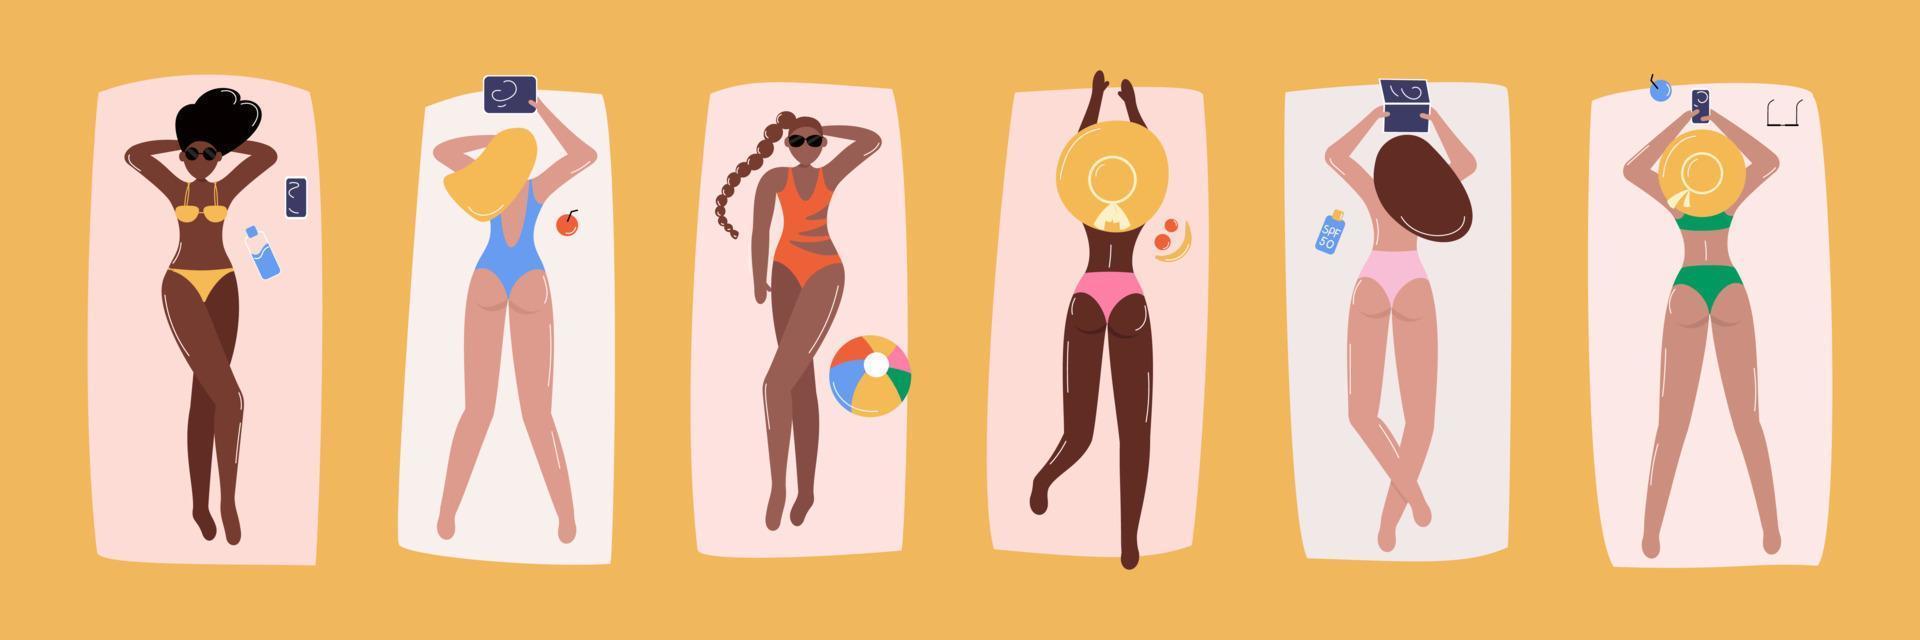 olika kvinnor solbad på strand vektor illustration